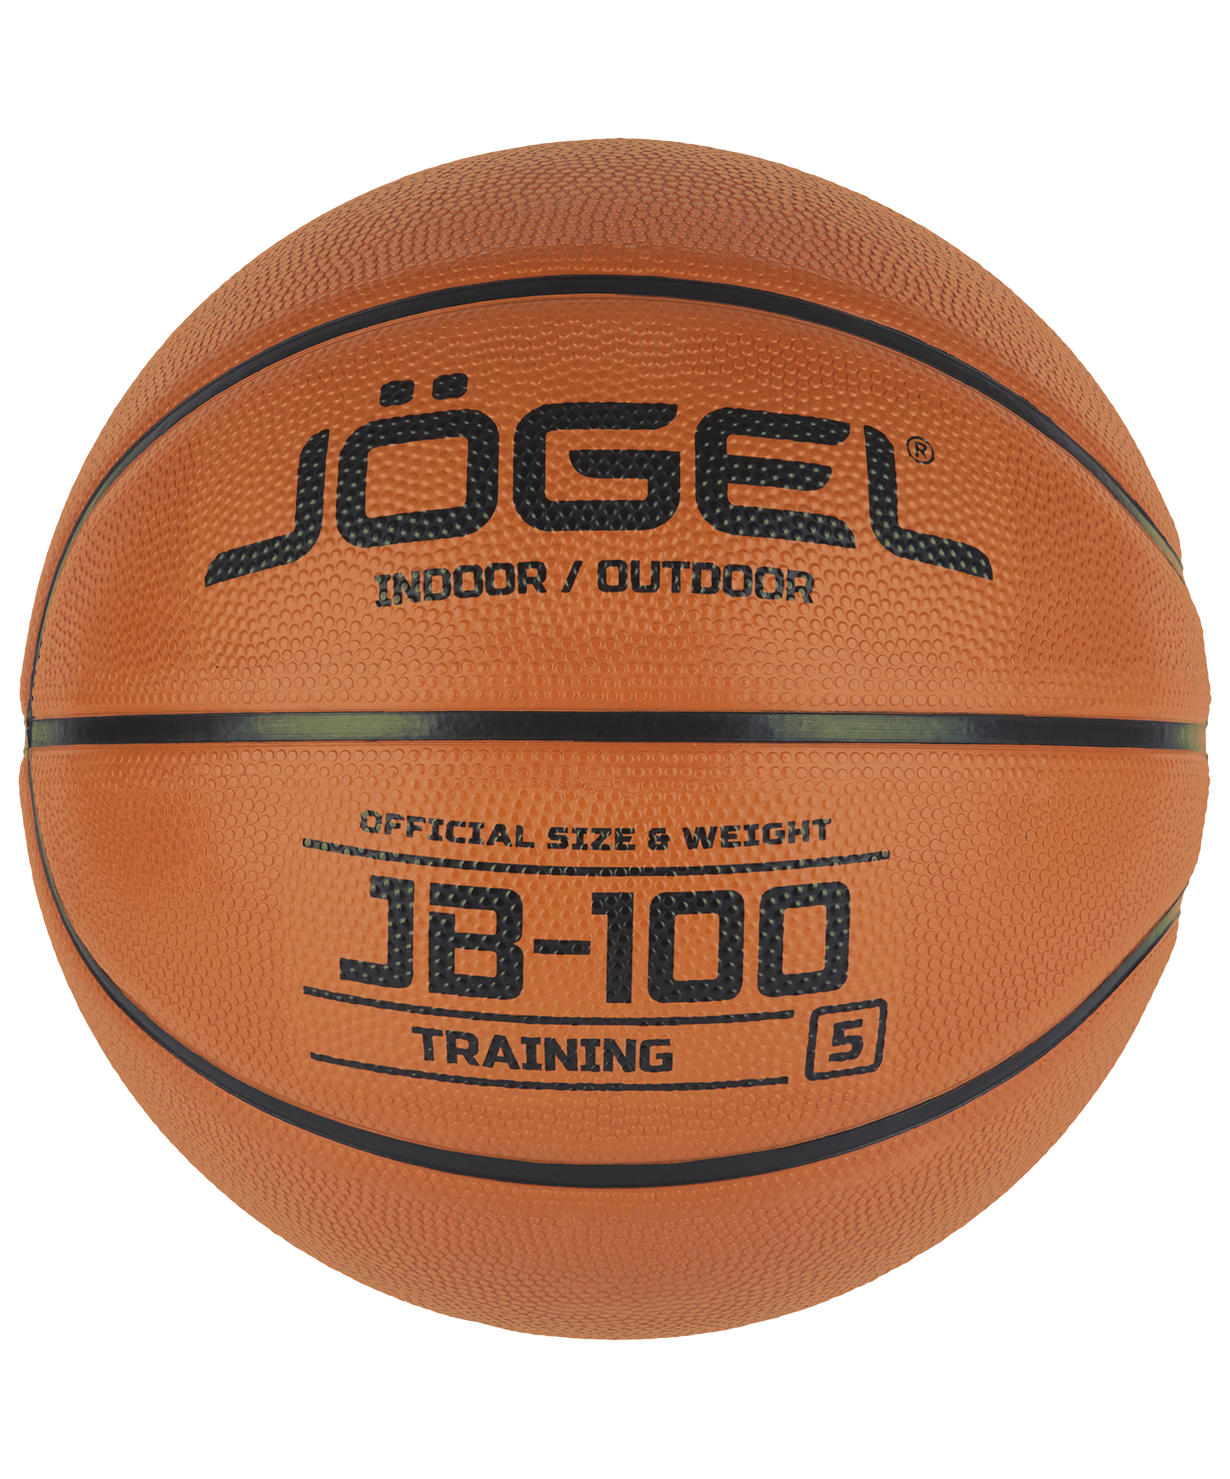 Мяч баскетбольный JB-100 Jögel №5